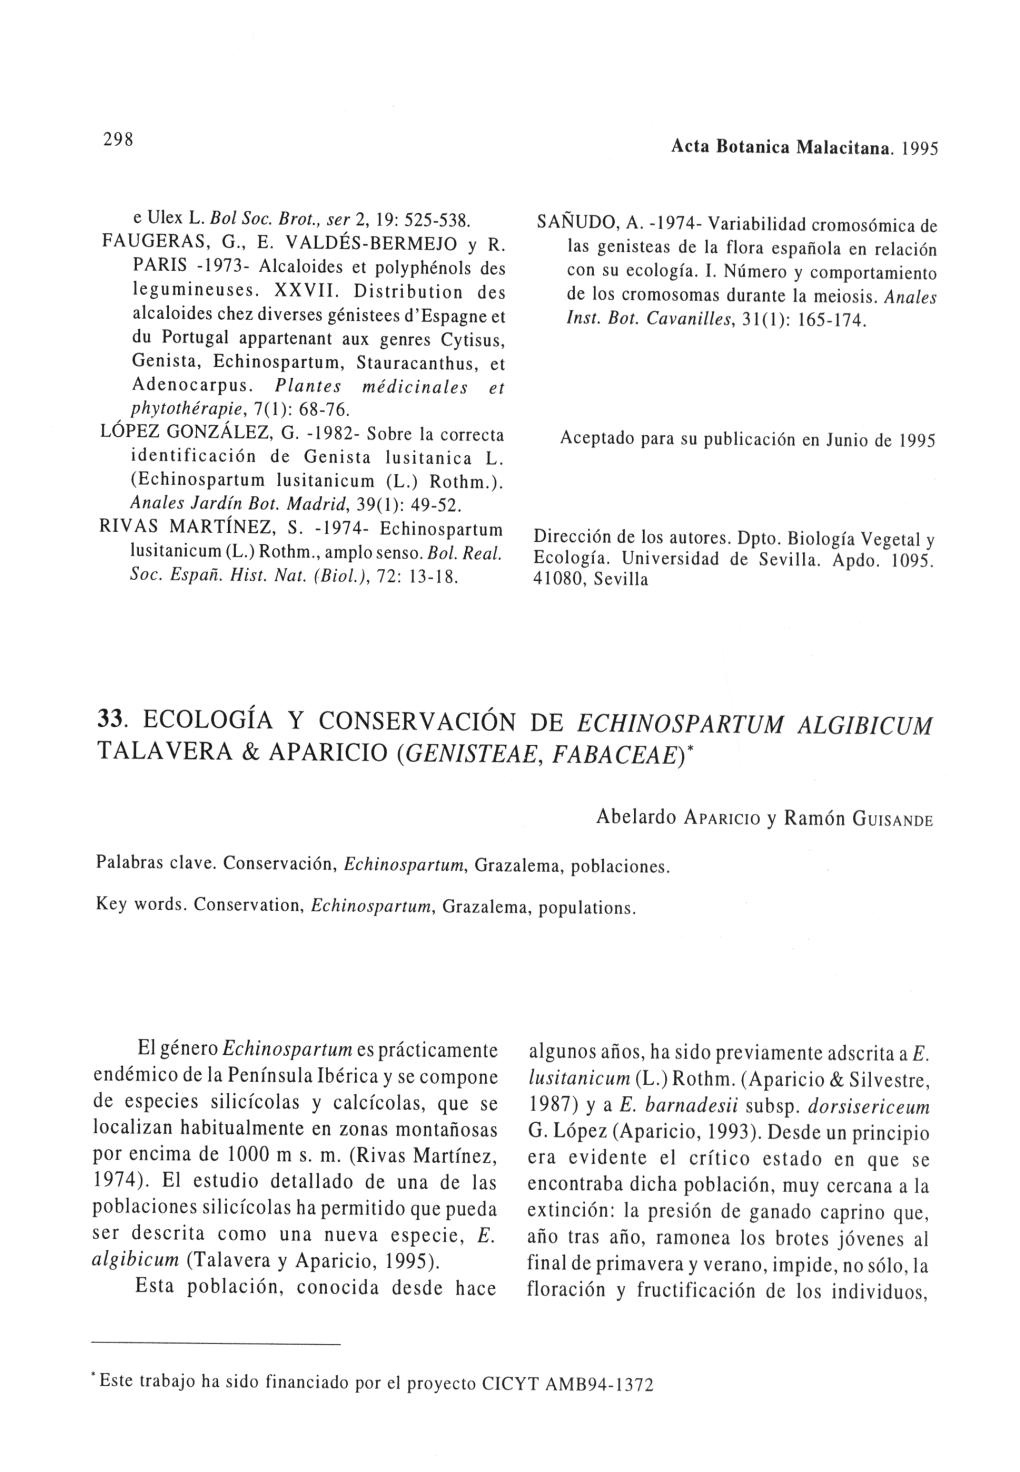 Talavera & Aparicio (Genisteae, Fabaceae)*